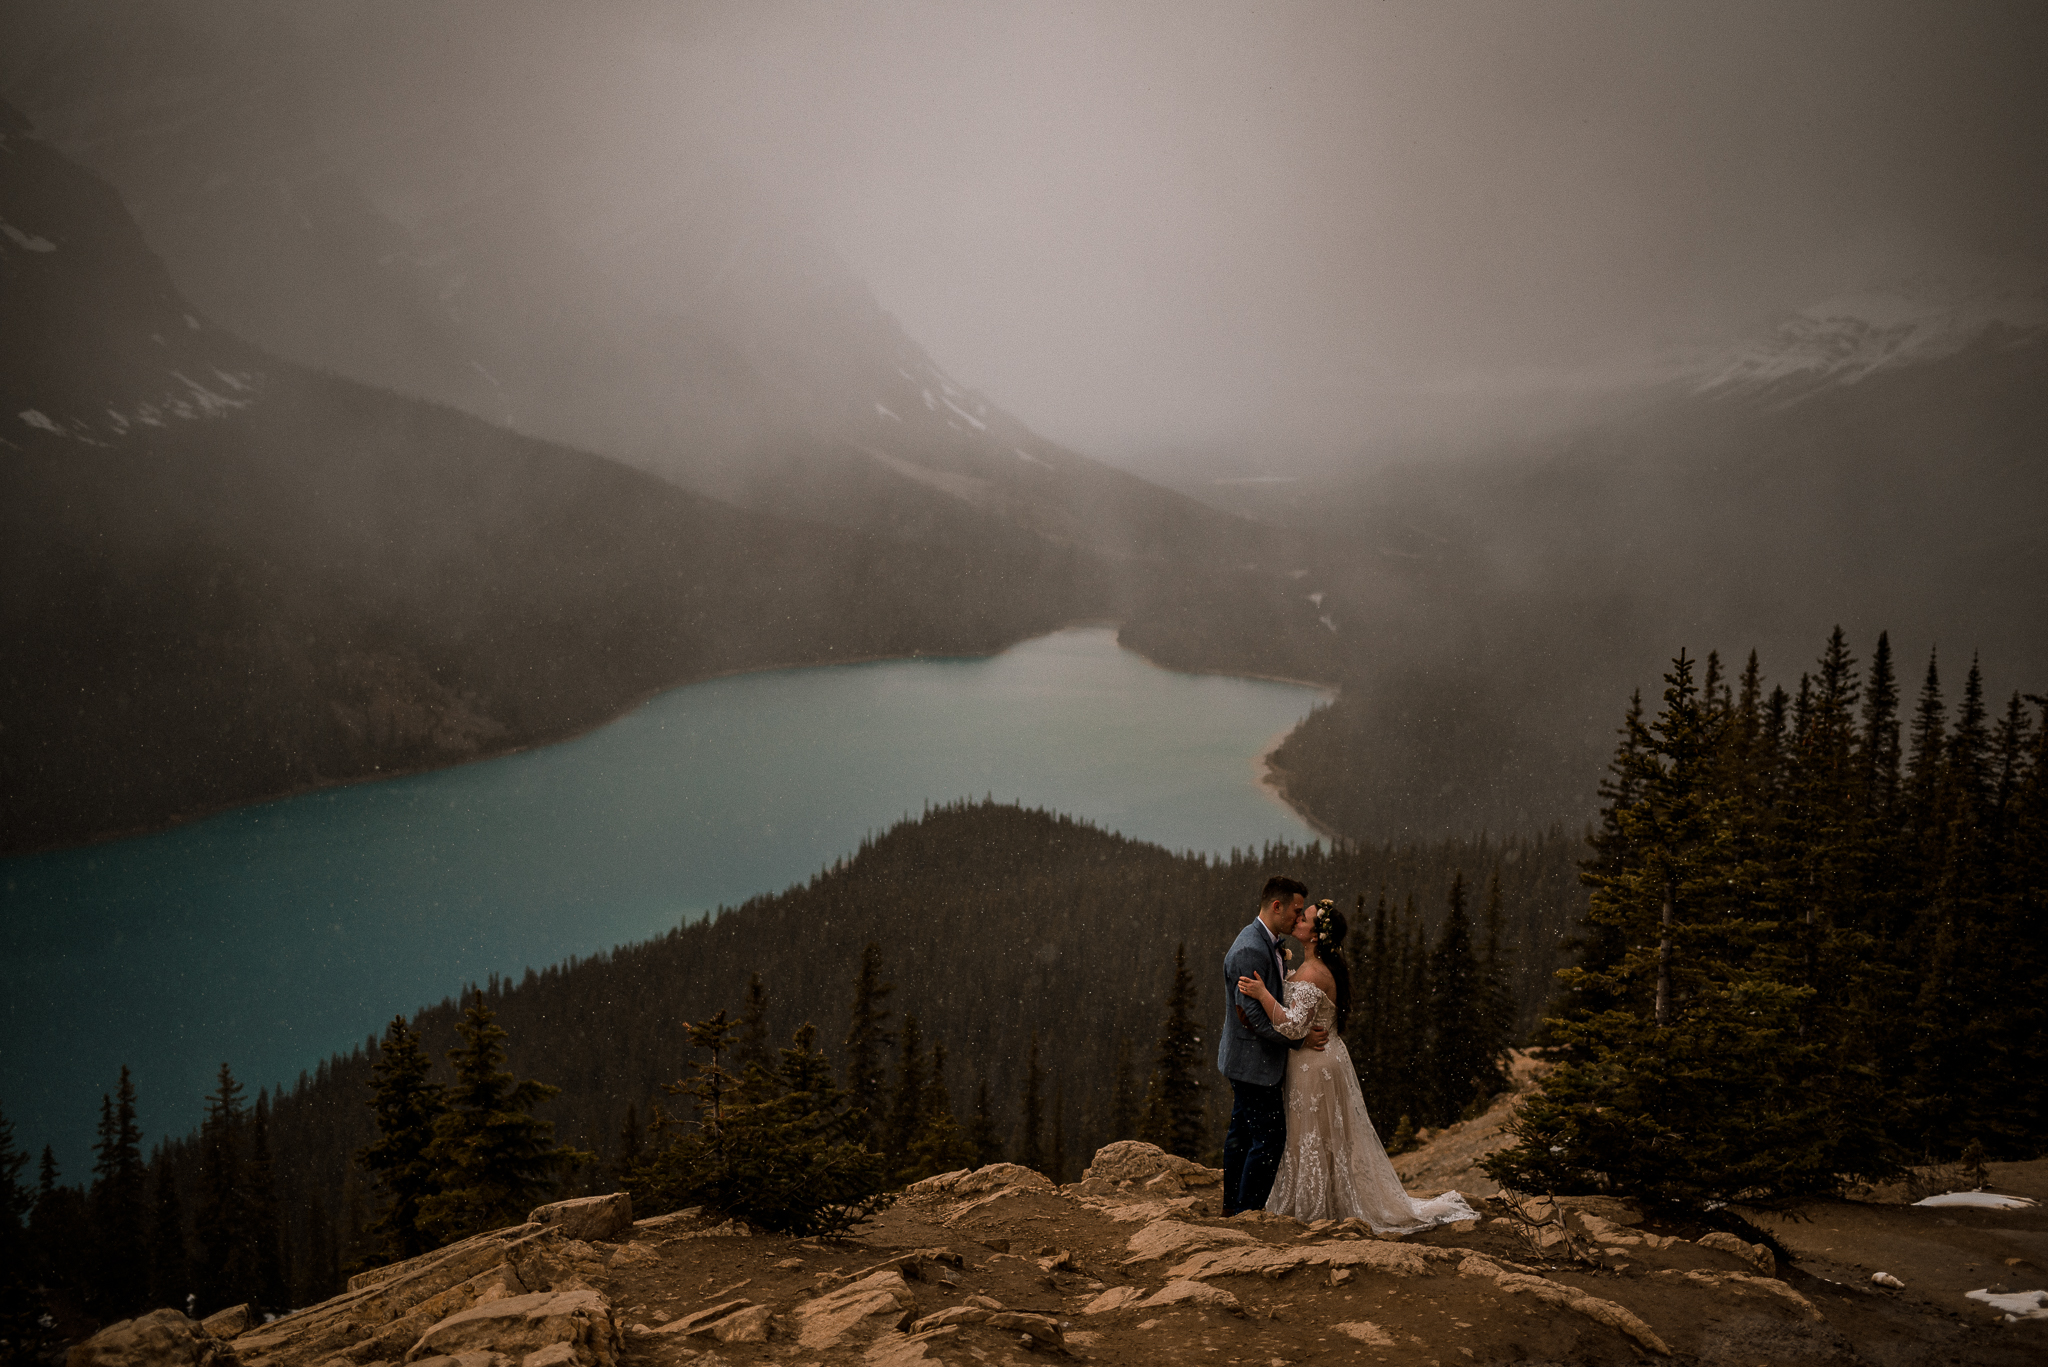 Snow falls while bride and groom kiss at Peyto Lake, Alberta